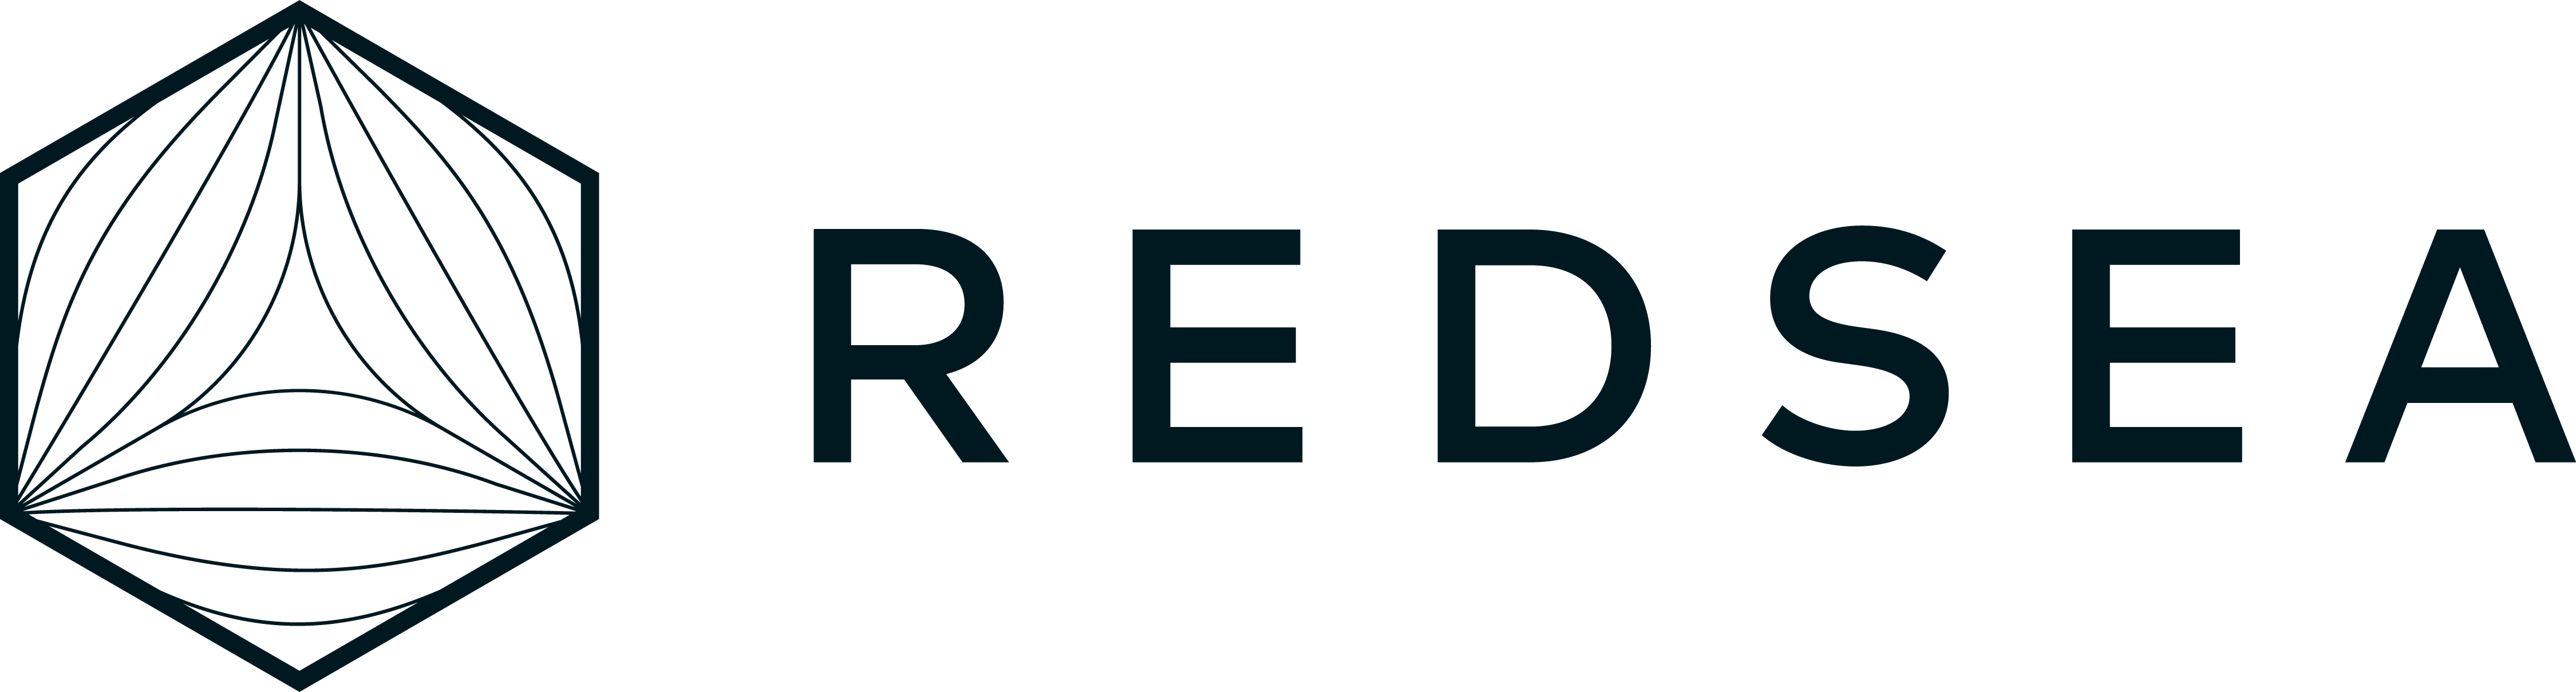 redsea farms logo